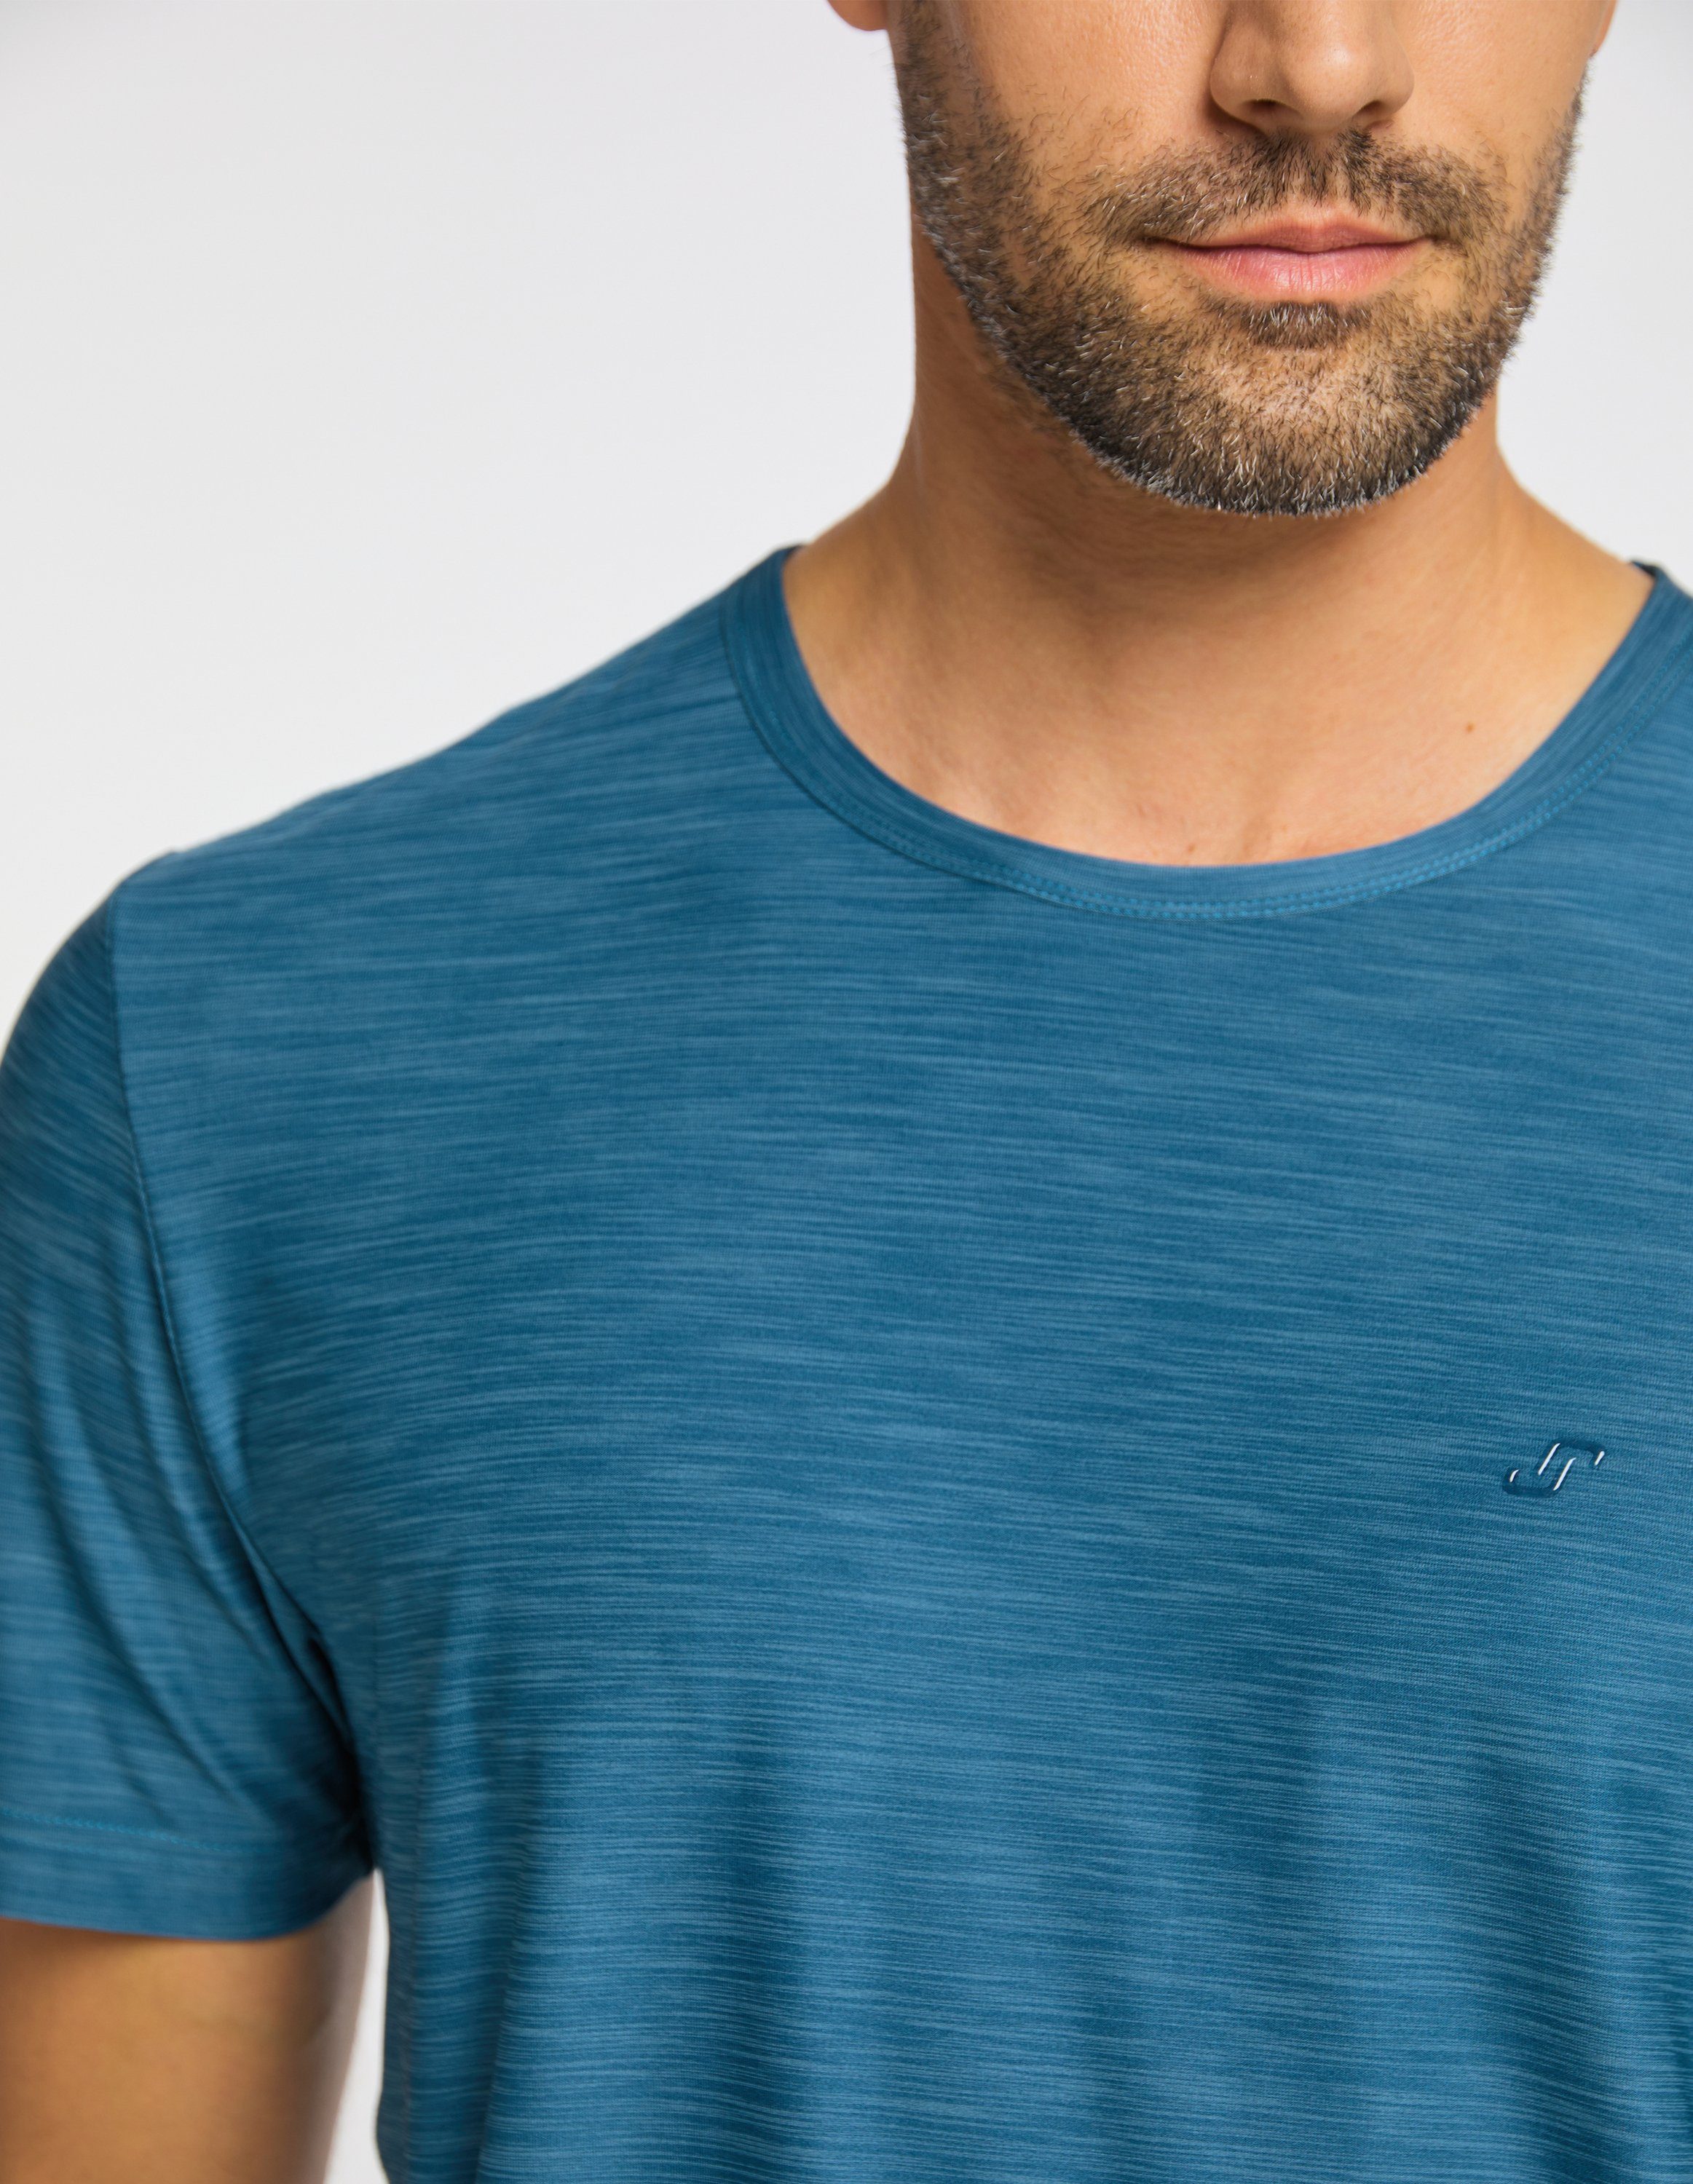 VITUS Joy blue metallic T-Shirt Sportswear T-Shirt melange